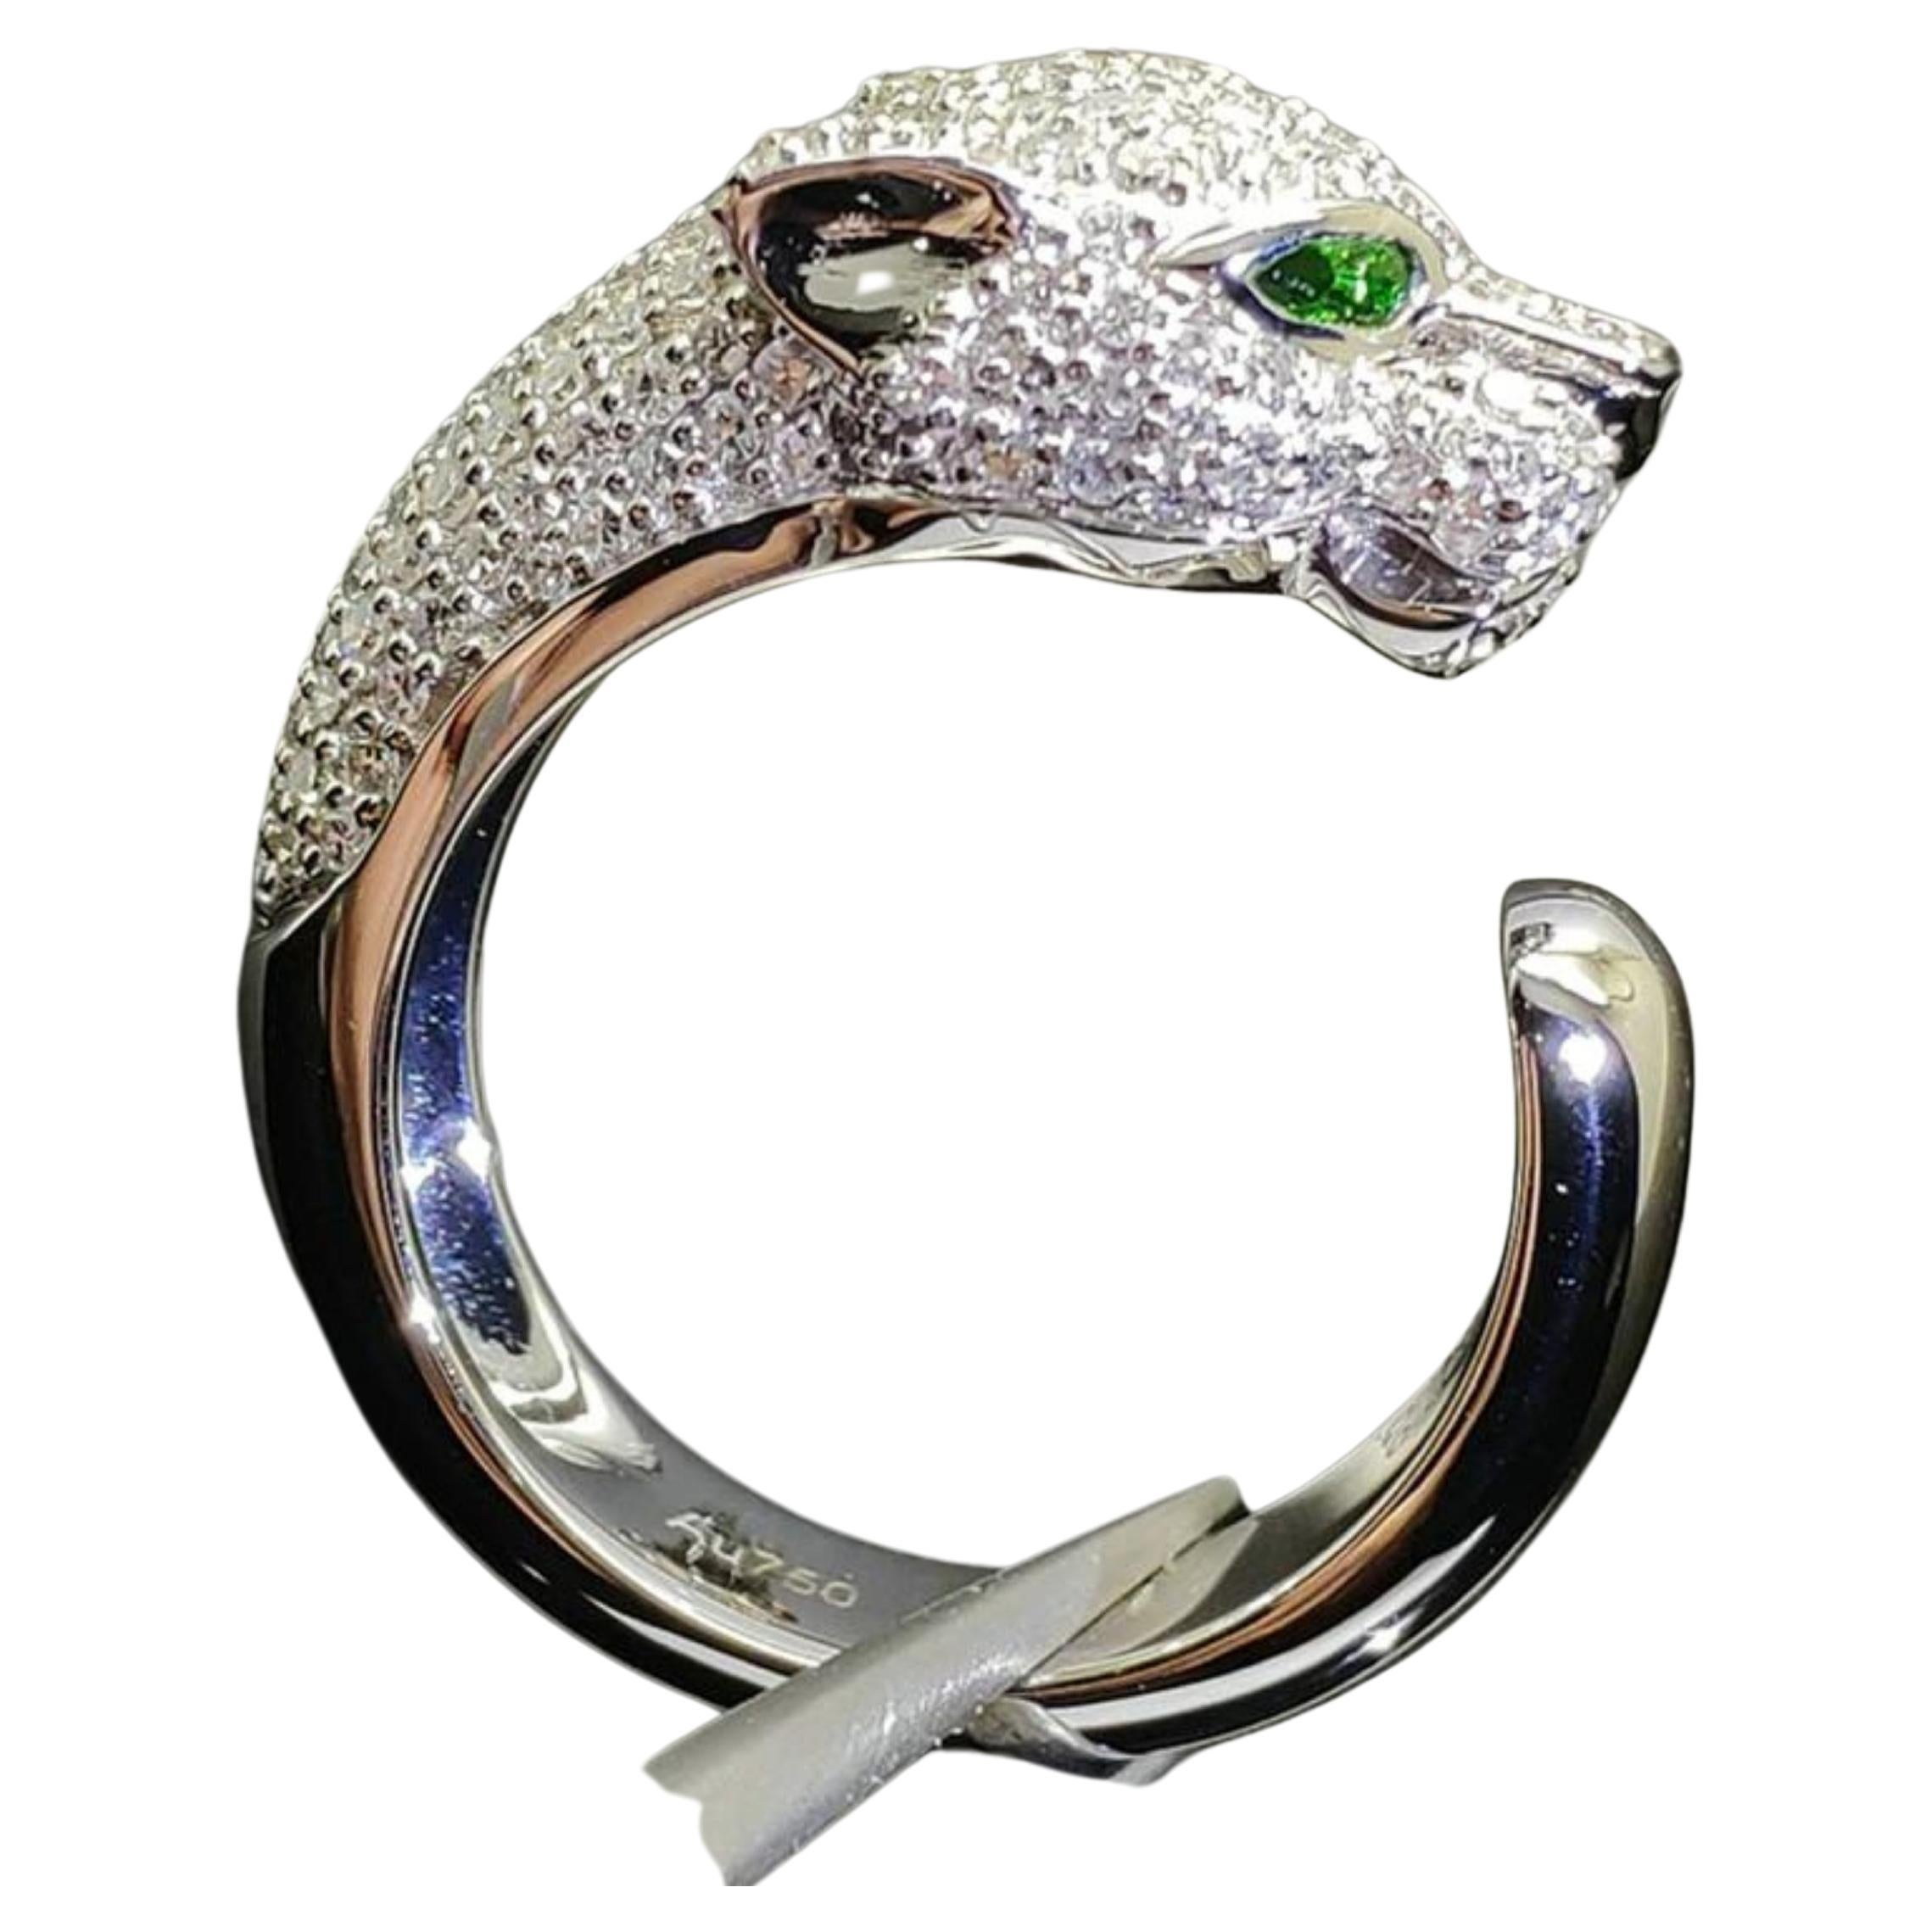 Leaped head Tsavorite Diamond Ring 18 Karat white Gold  For Sale